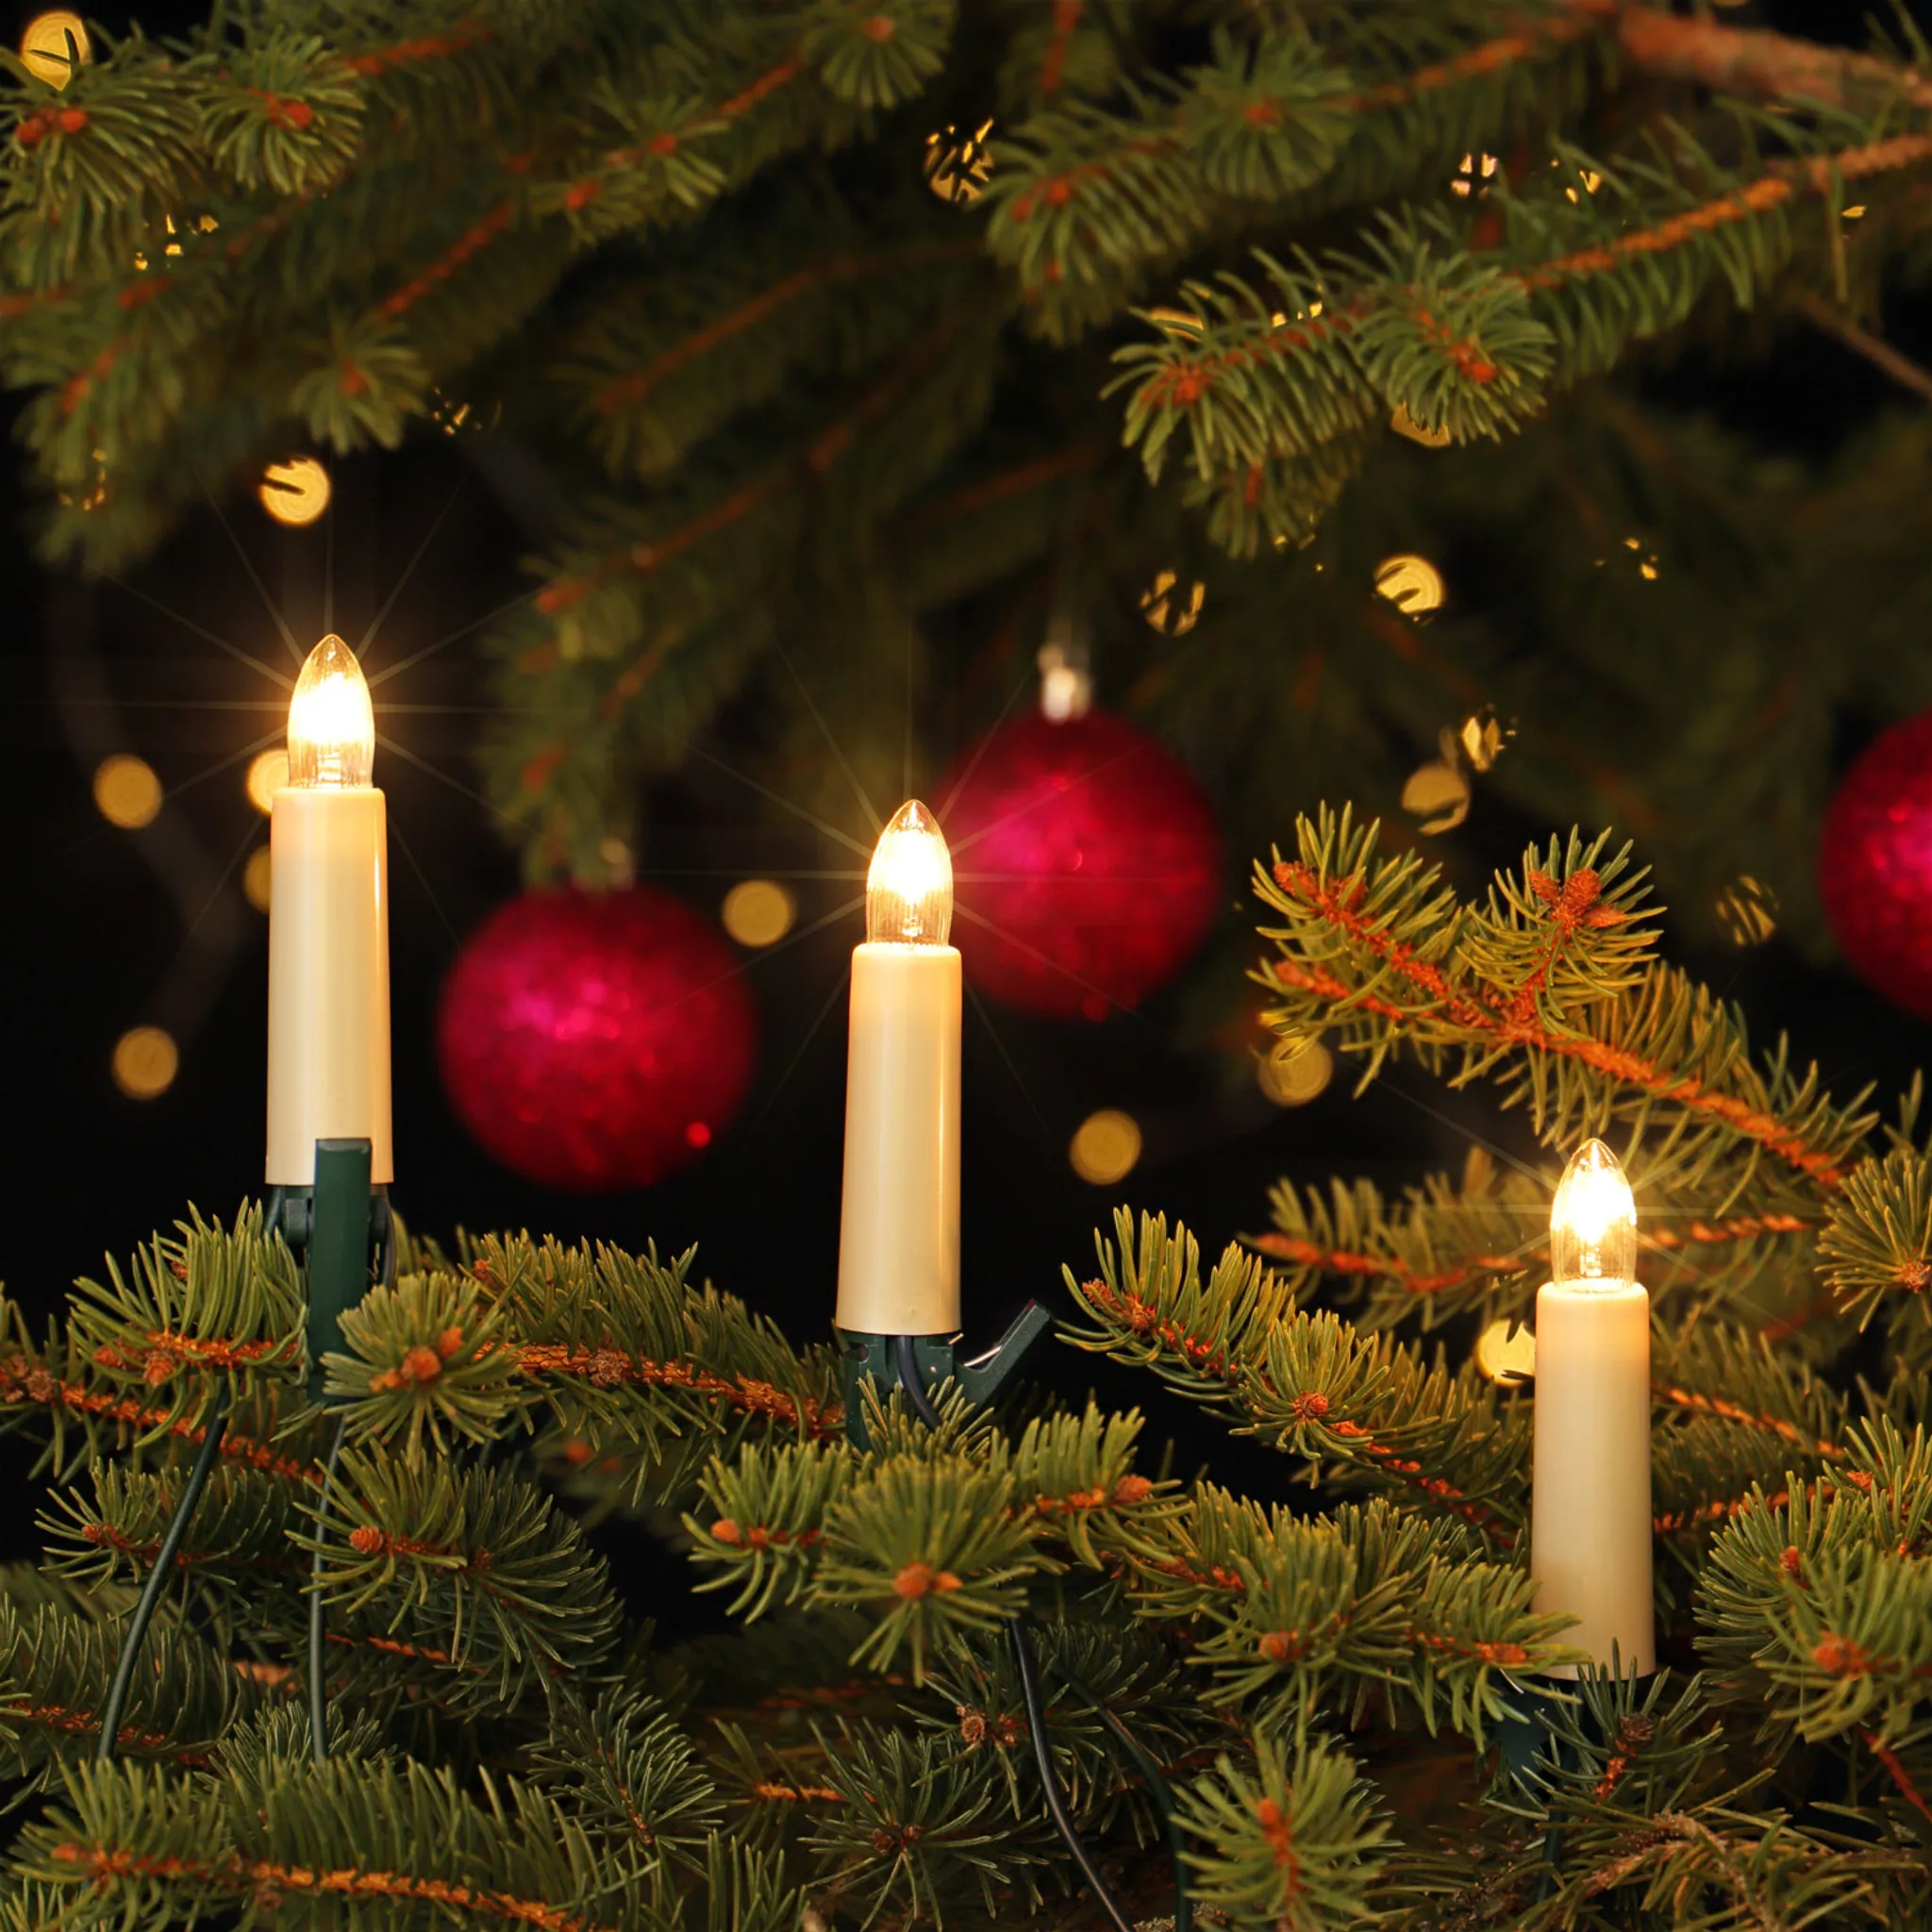 NARVA Tannenbaum 30 17,4m Weihnachtsbaum Beleuchtung Kerzenlichterkette Schaftkerzen innen warm